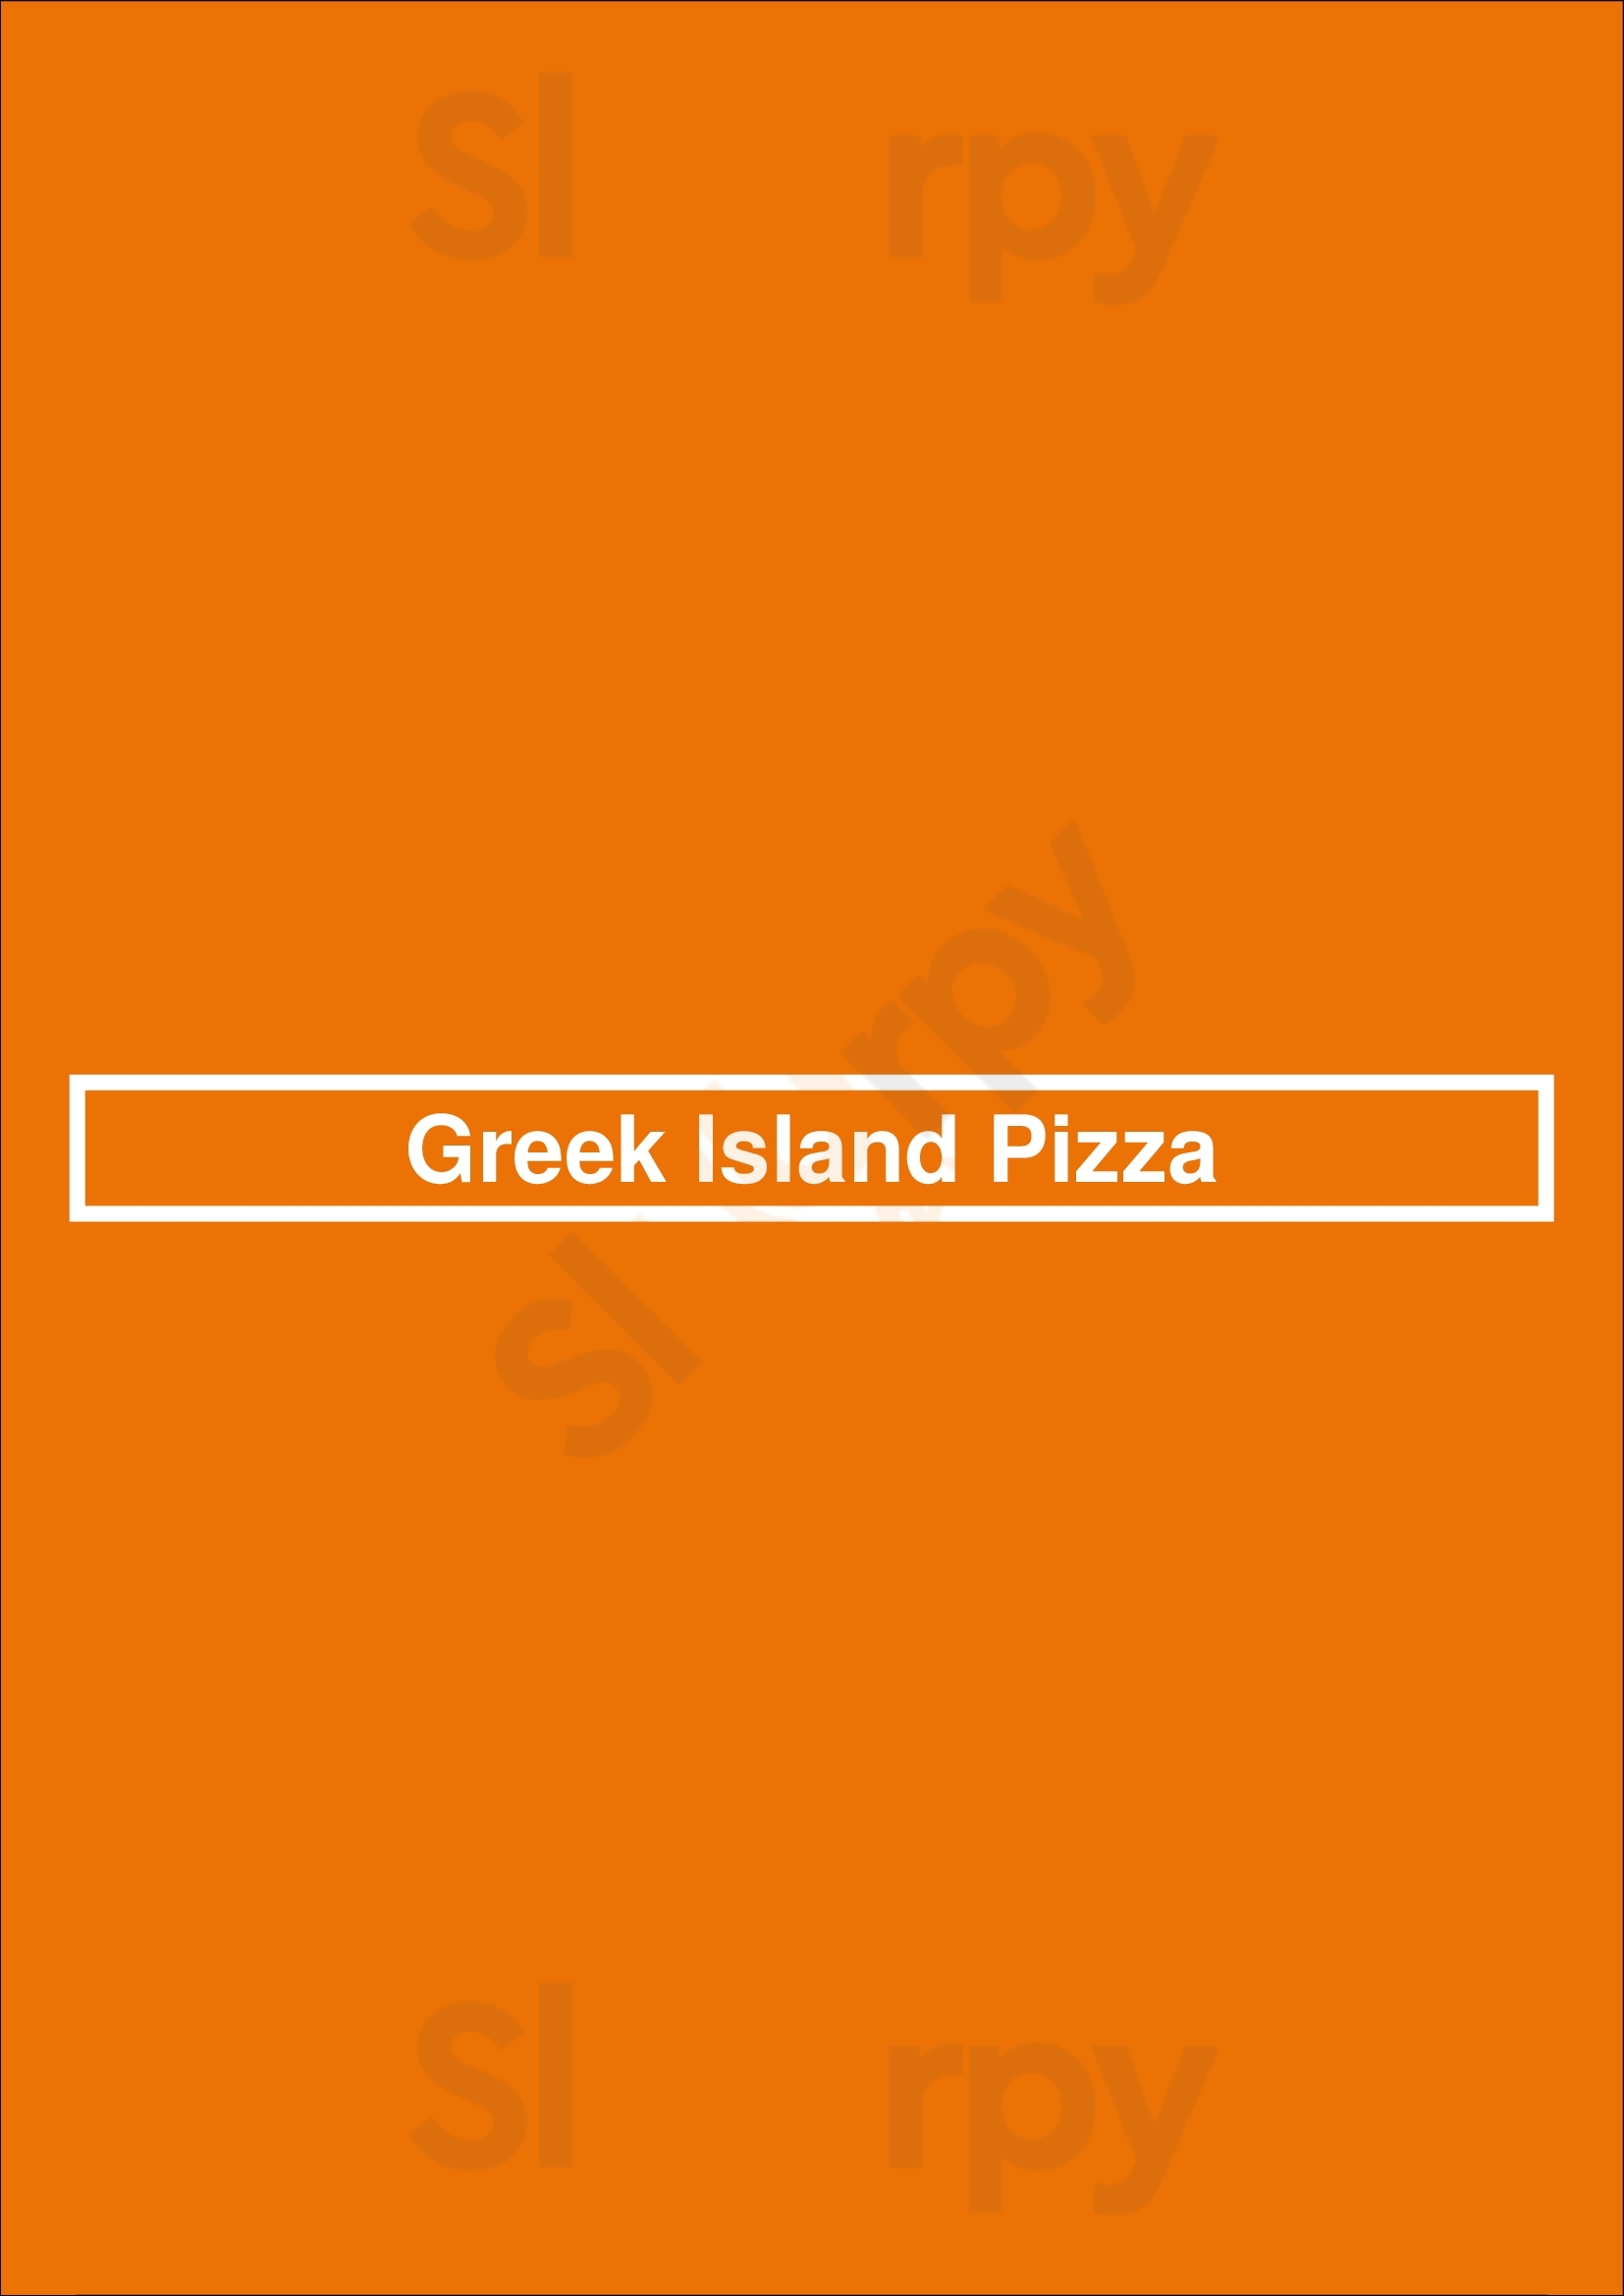 Greek Island Pizza Surrey Menu - 1